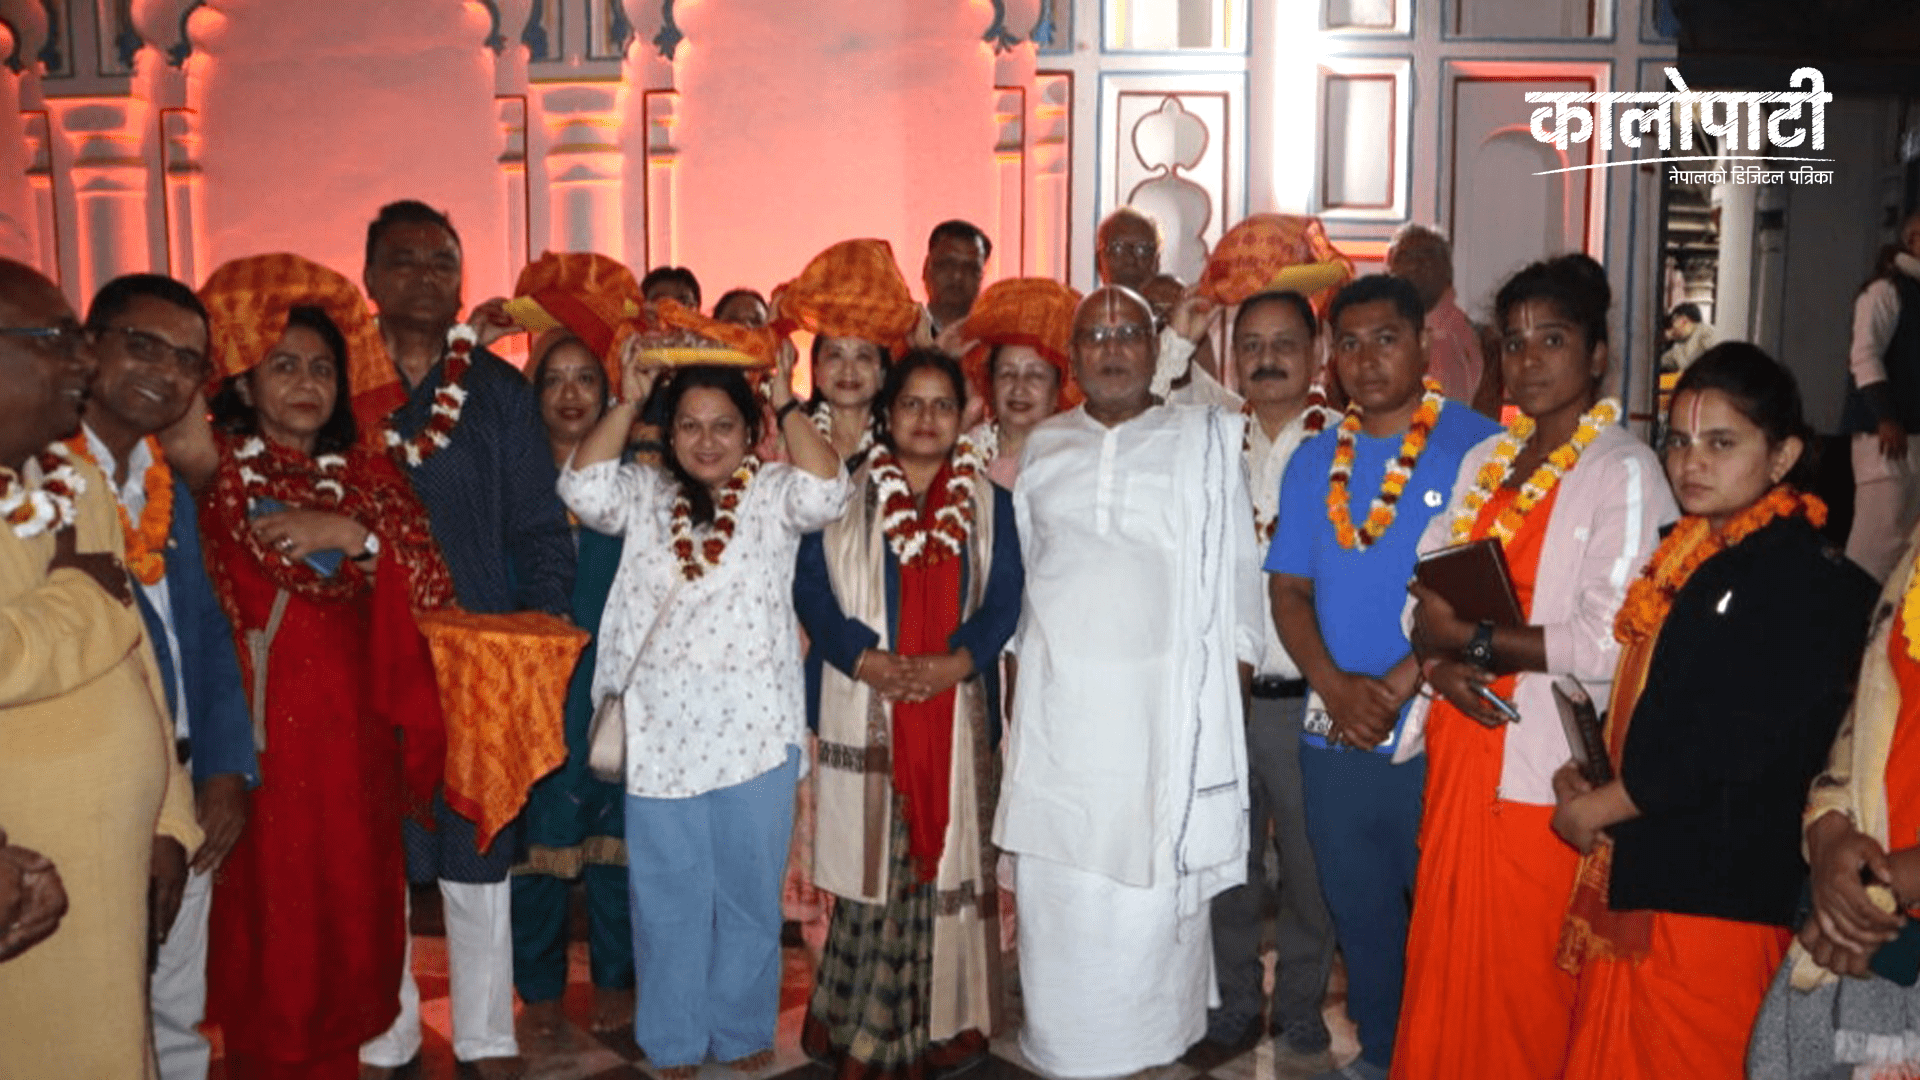 जनकपुरको धार्मिक पर्यटन प्रवर्द्धन गर्न होटेल व्यवसायी अयोध्या प्रस्थान